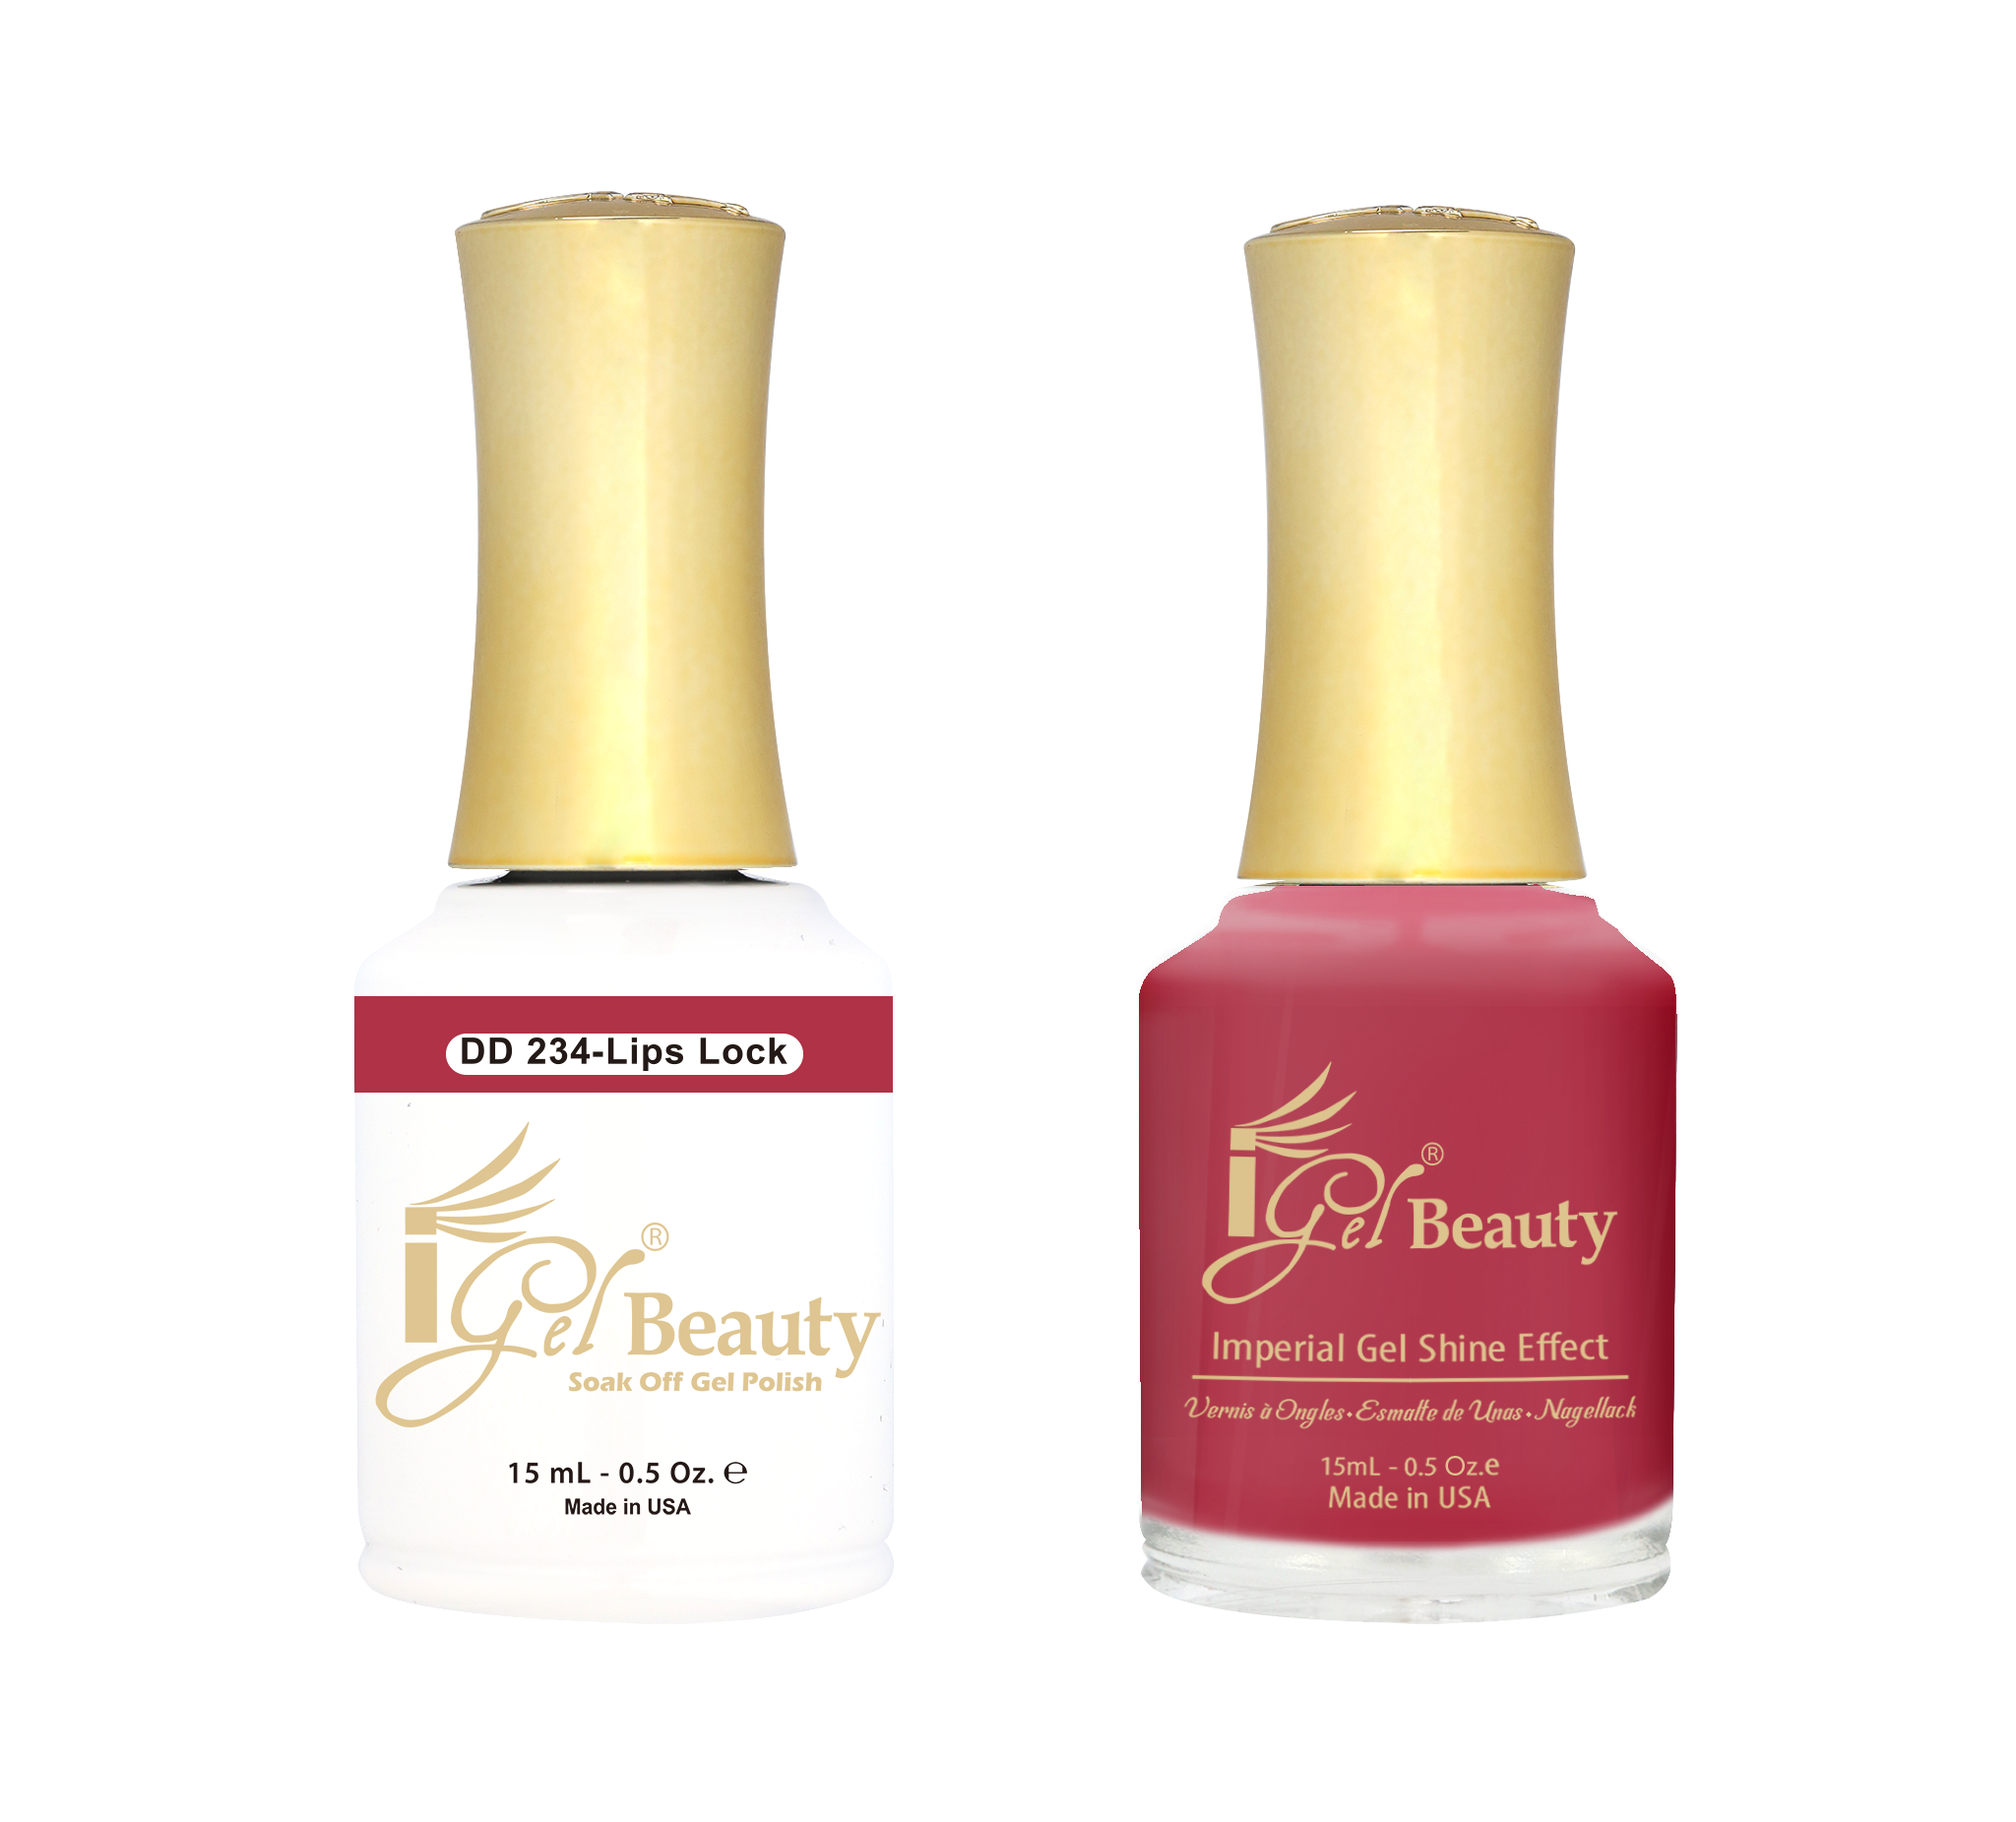 iGel Beauty - Dip & Dap Duo - DD234 Lips Lock